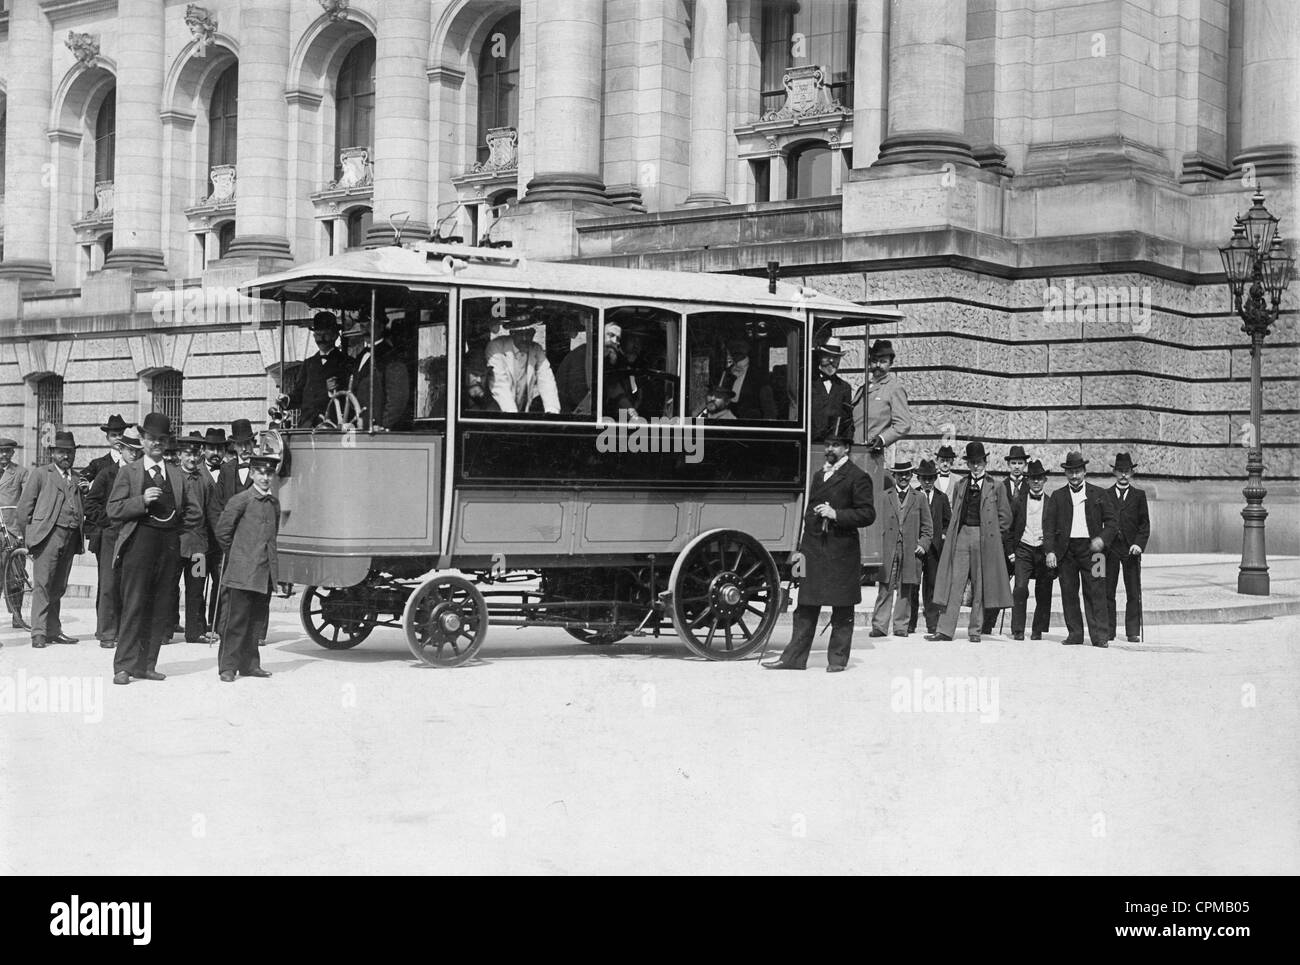 Elektrisch betriebenen Bus in Berlin, um 1900 Stockfoto